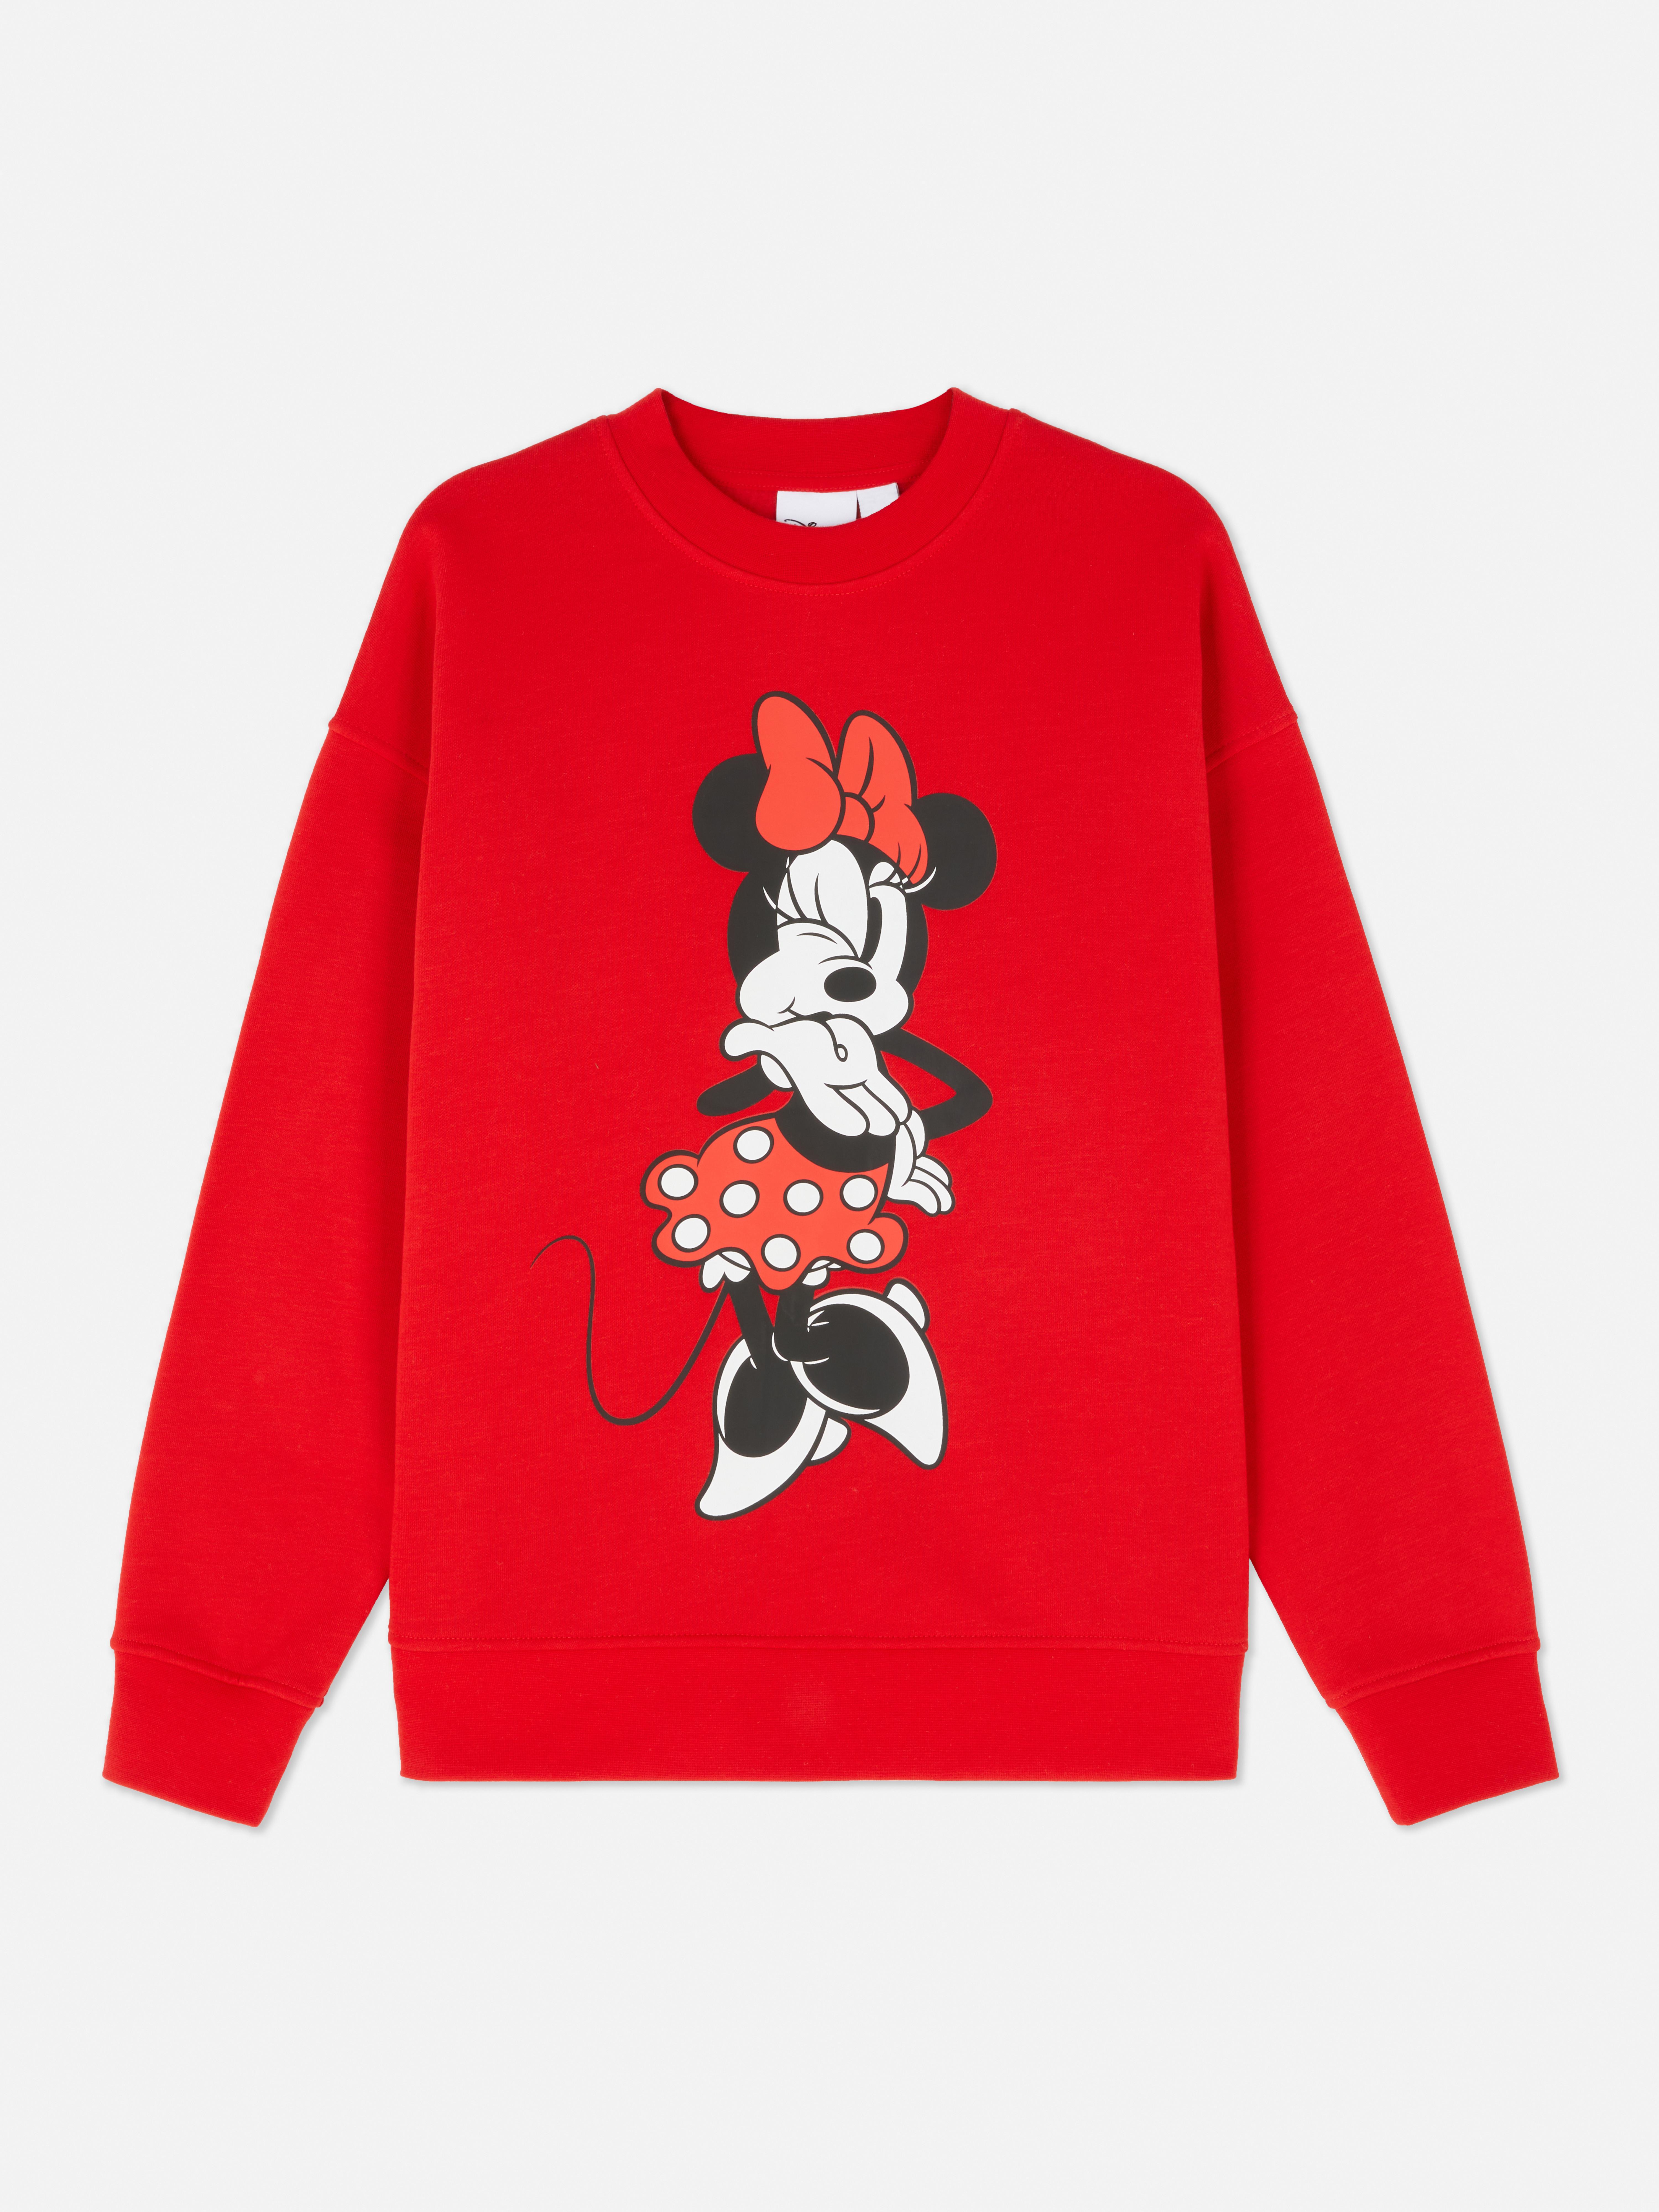 Sudadera de Minnie Mouse de Disney | Jerséis y sudaderas para mujer | Jerséis de mujer | Ropa para | Nuestra línea de moda femenina Todos los productos Primark | España